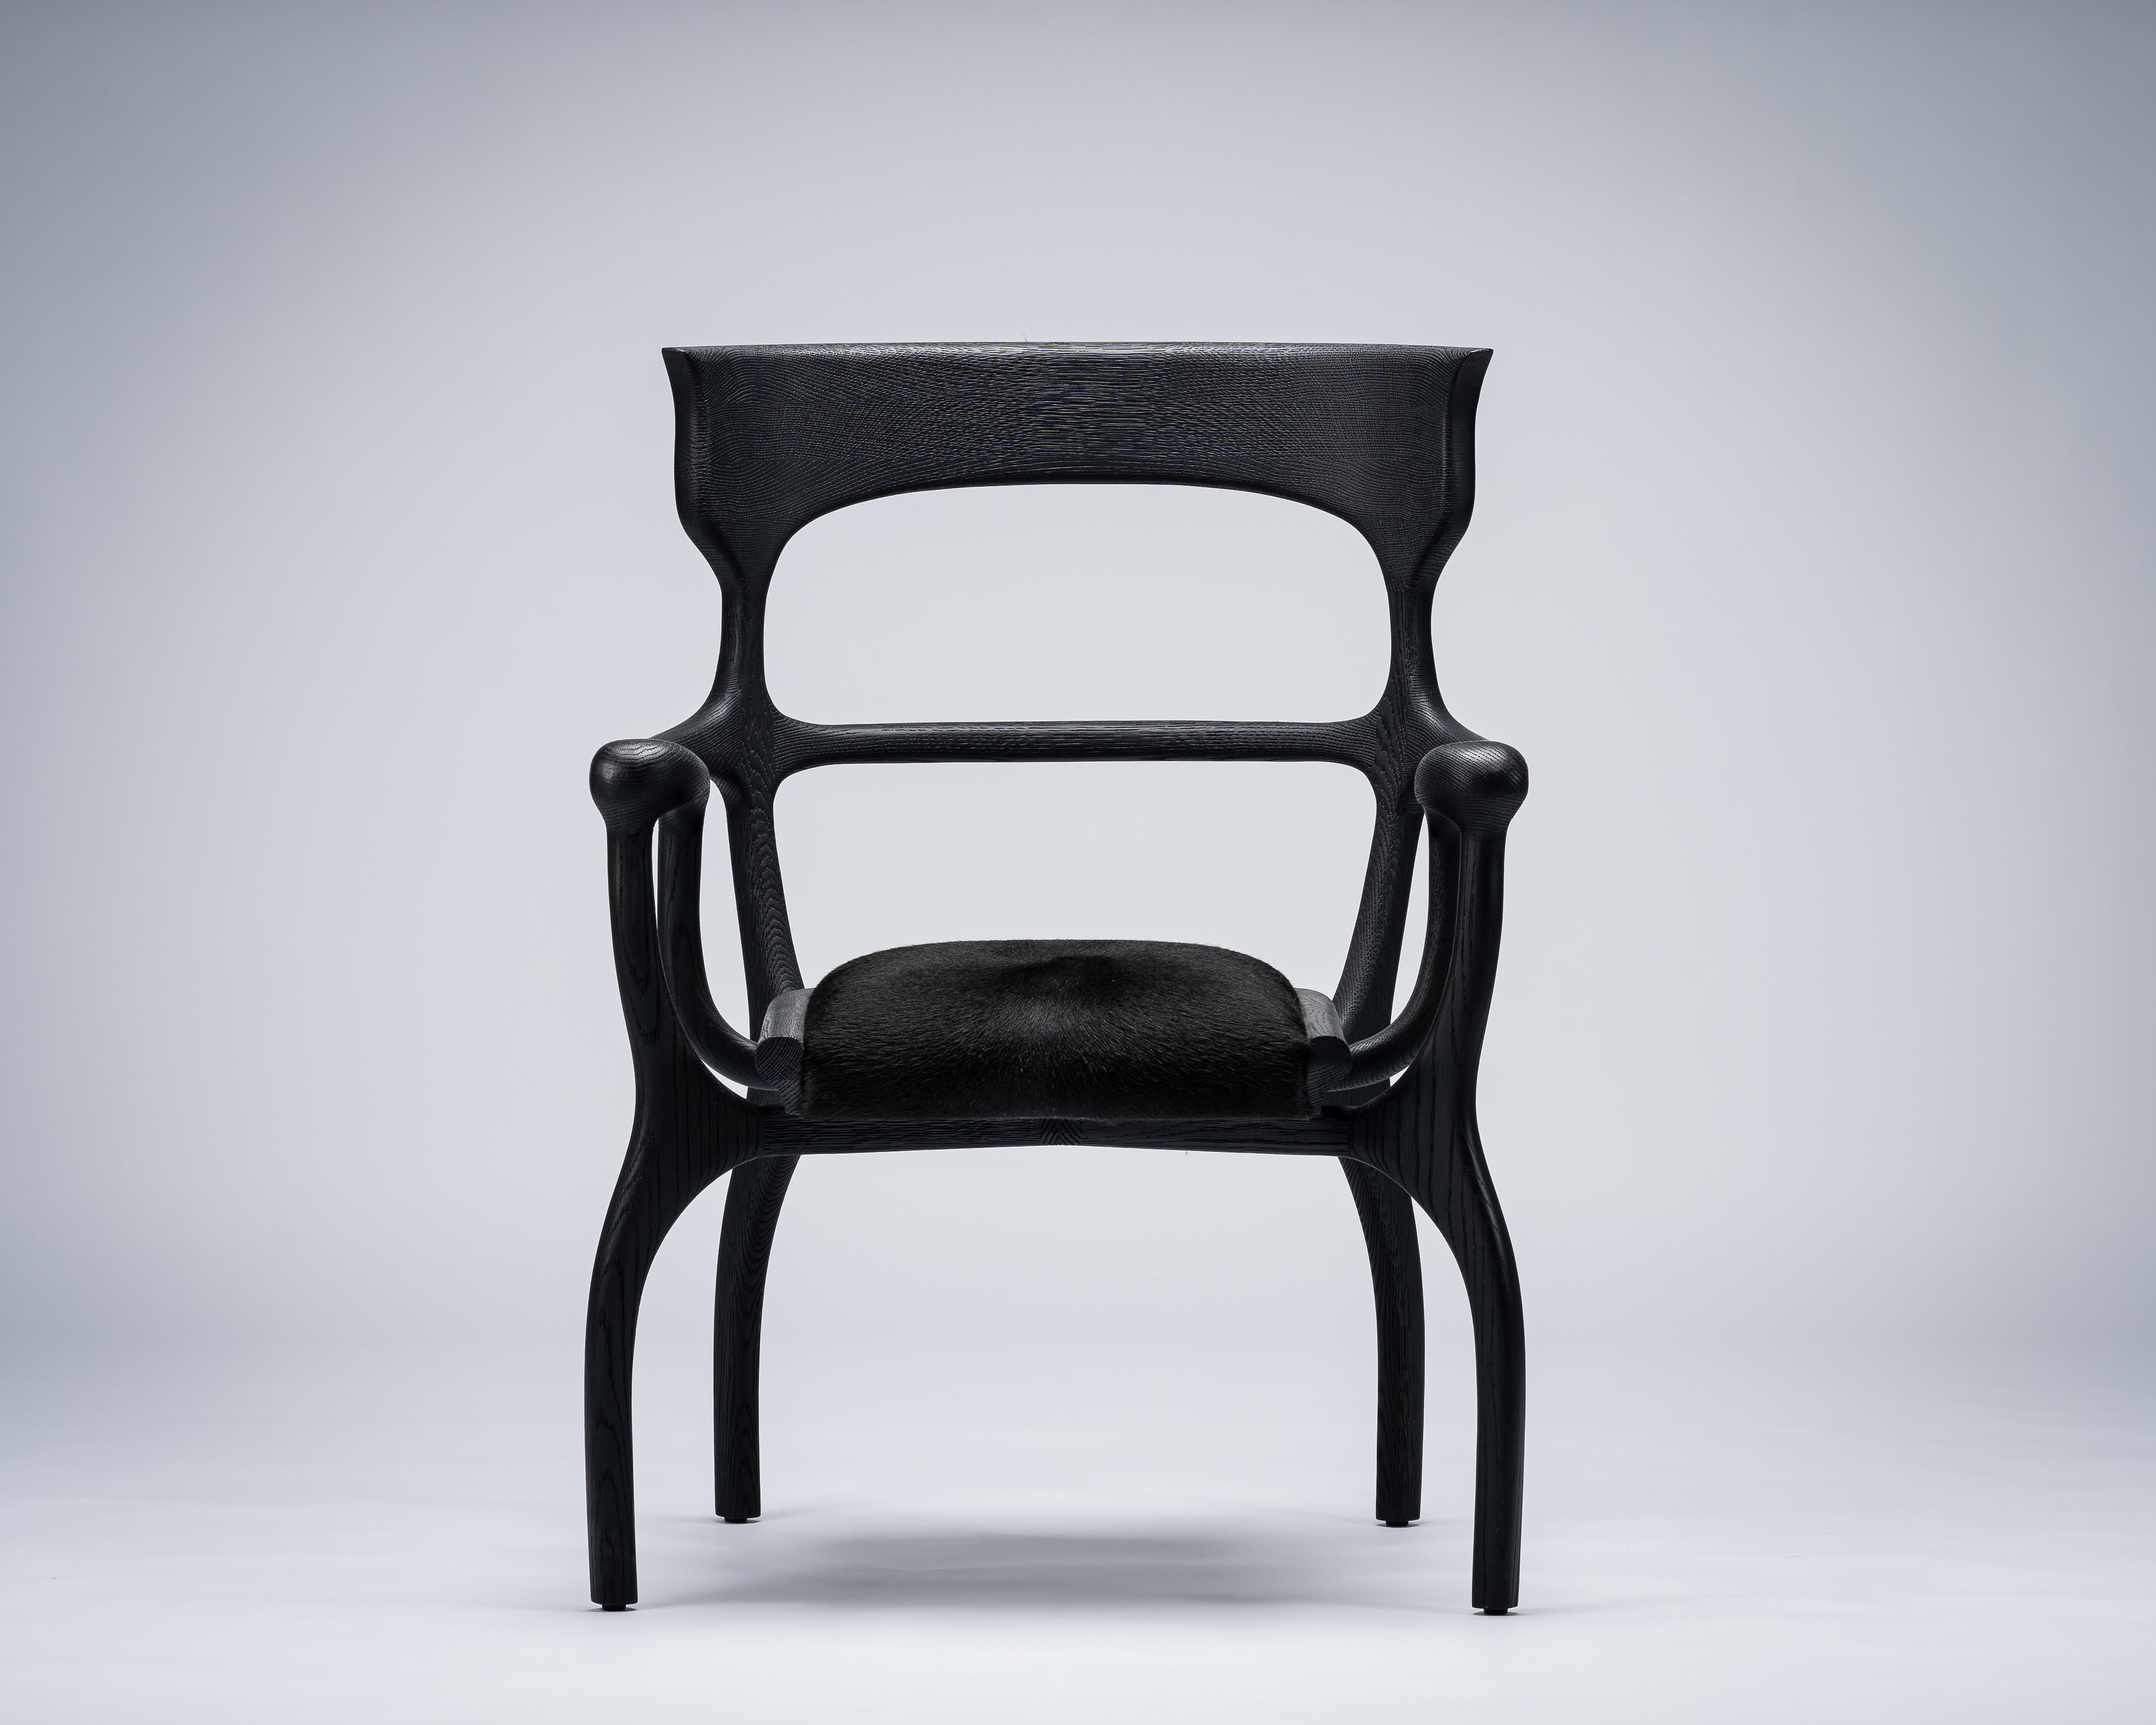 MARTA-Stuhl von Mandy Graham 

MARTA
M01, Stuhl Sessel
Amerikanischer Nussbaum / sandgestrahlte Weißeiche, Sitz aus behaartem Rindsleder
Maße: 27